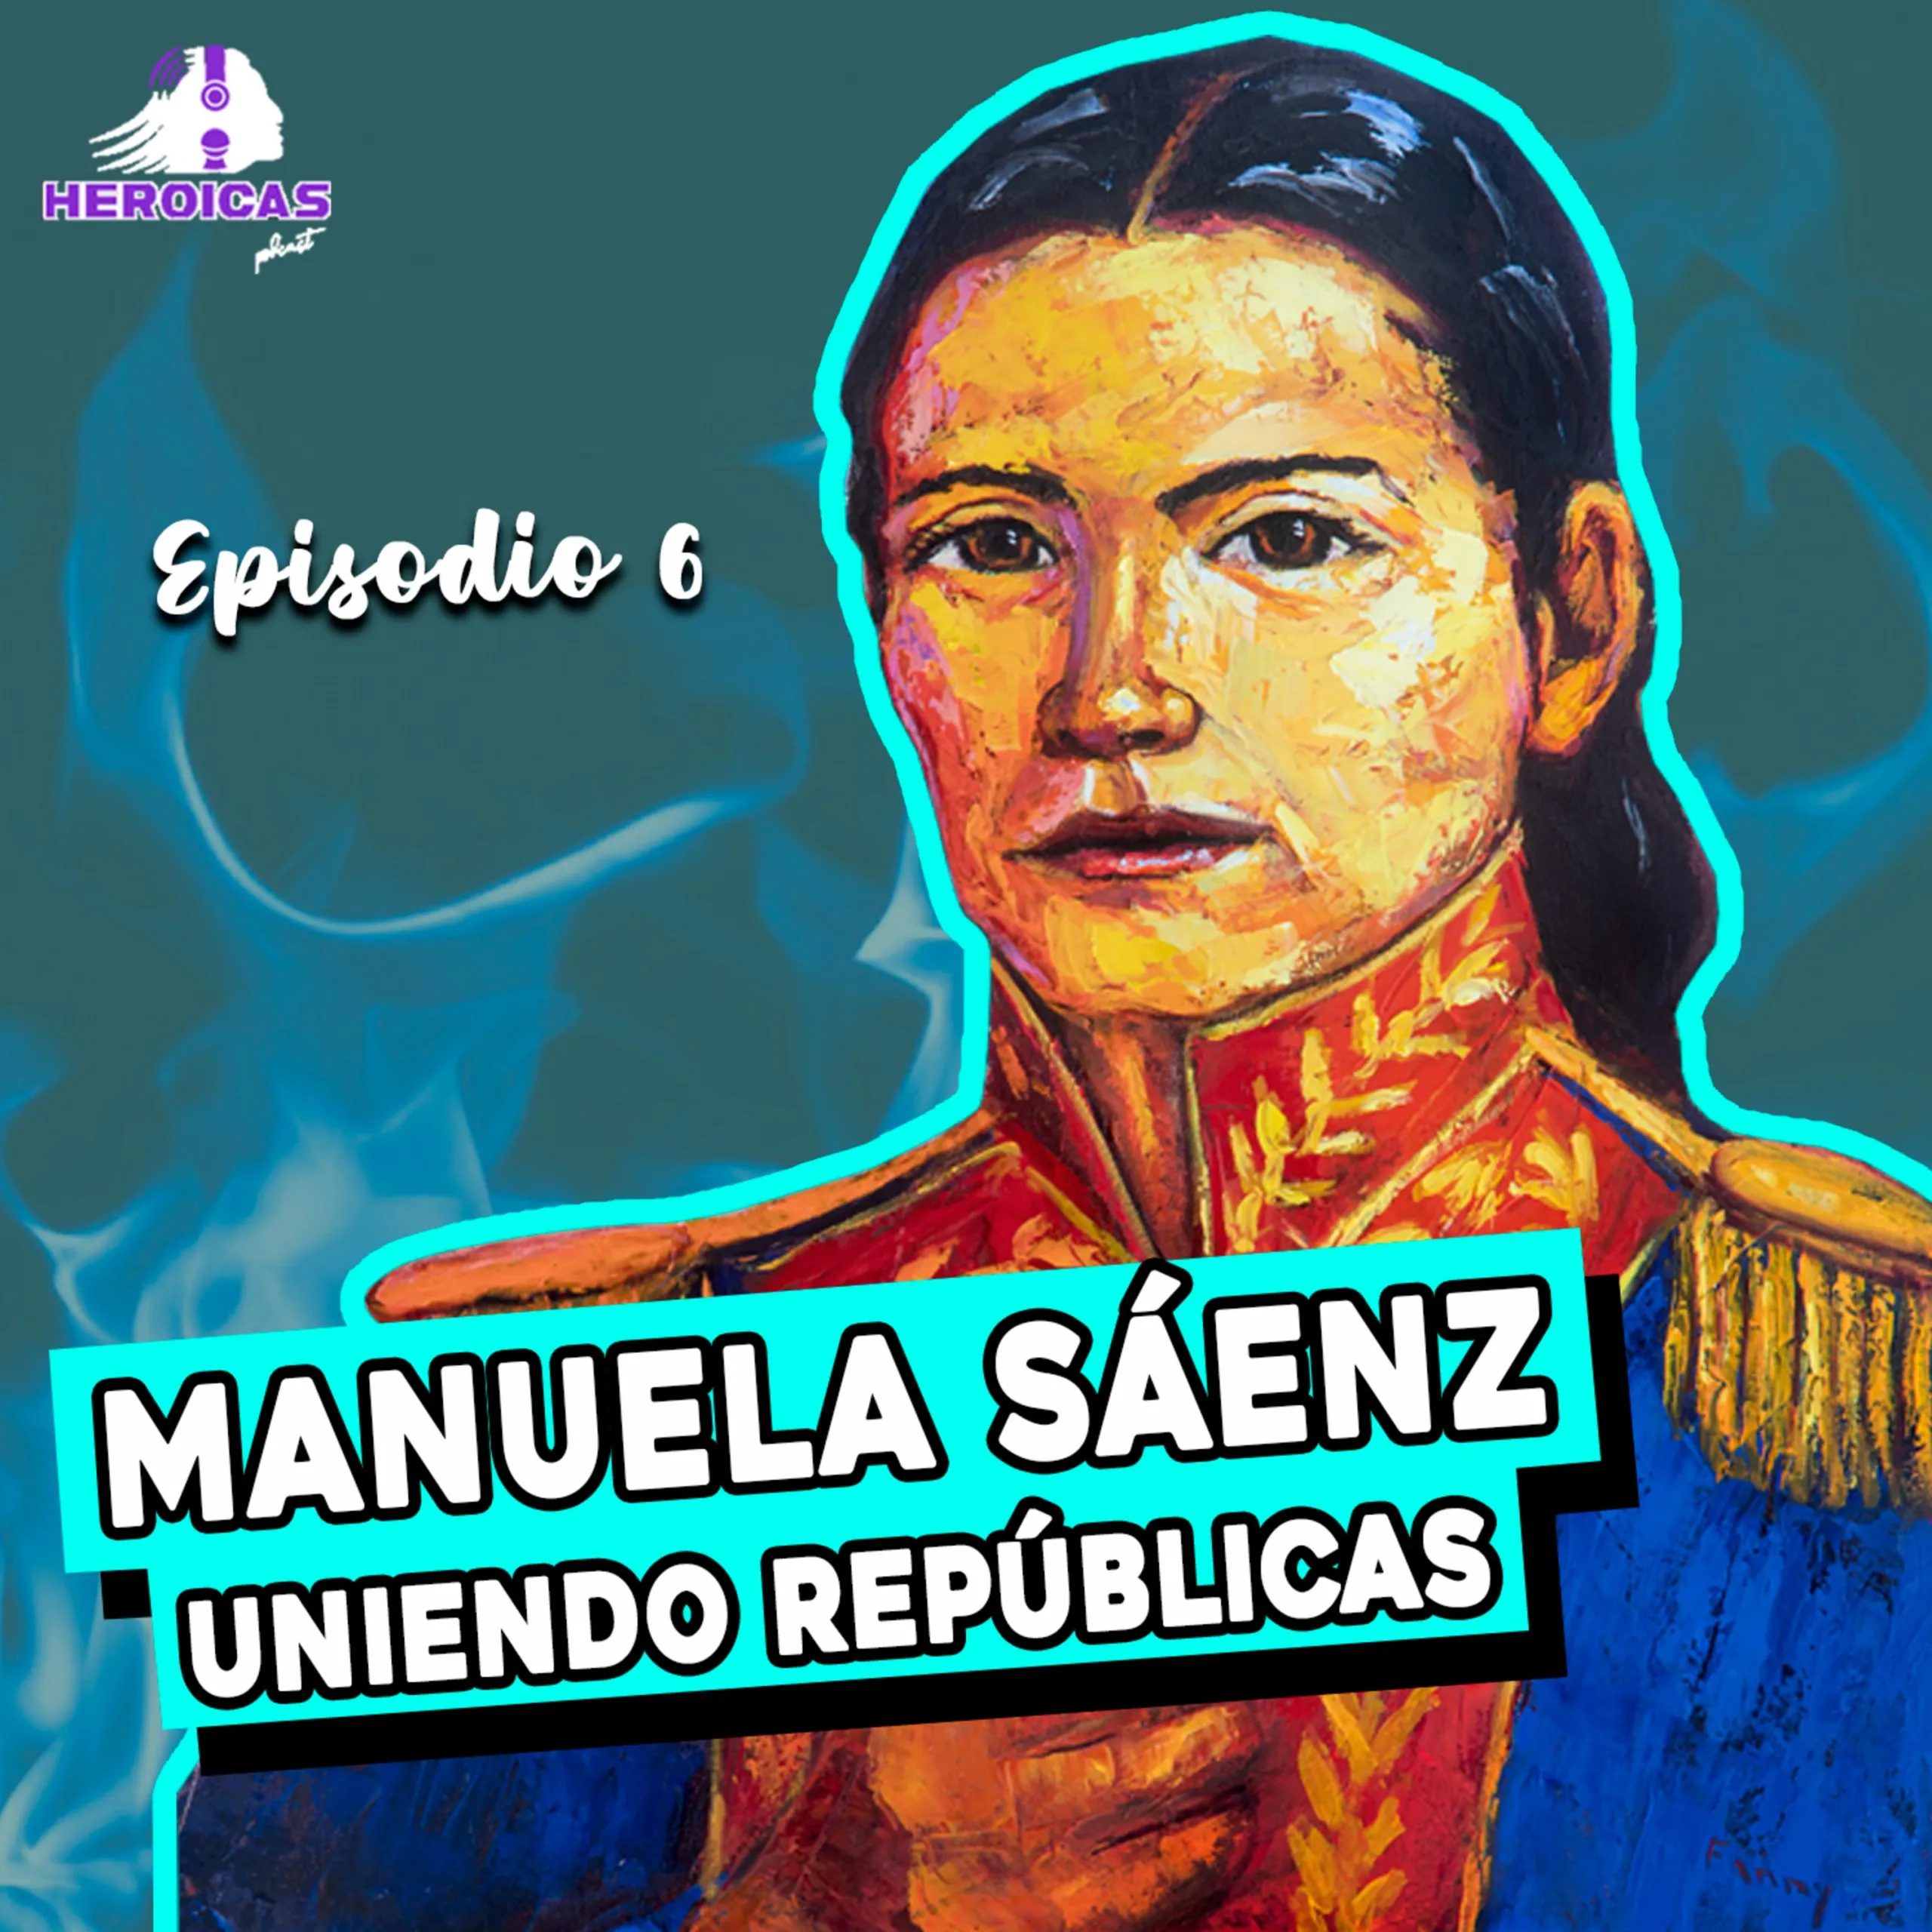 Manuela Saenz: Uniendo Repúblicas - Heroicas Podcast